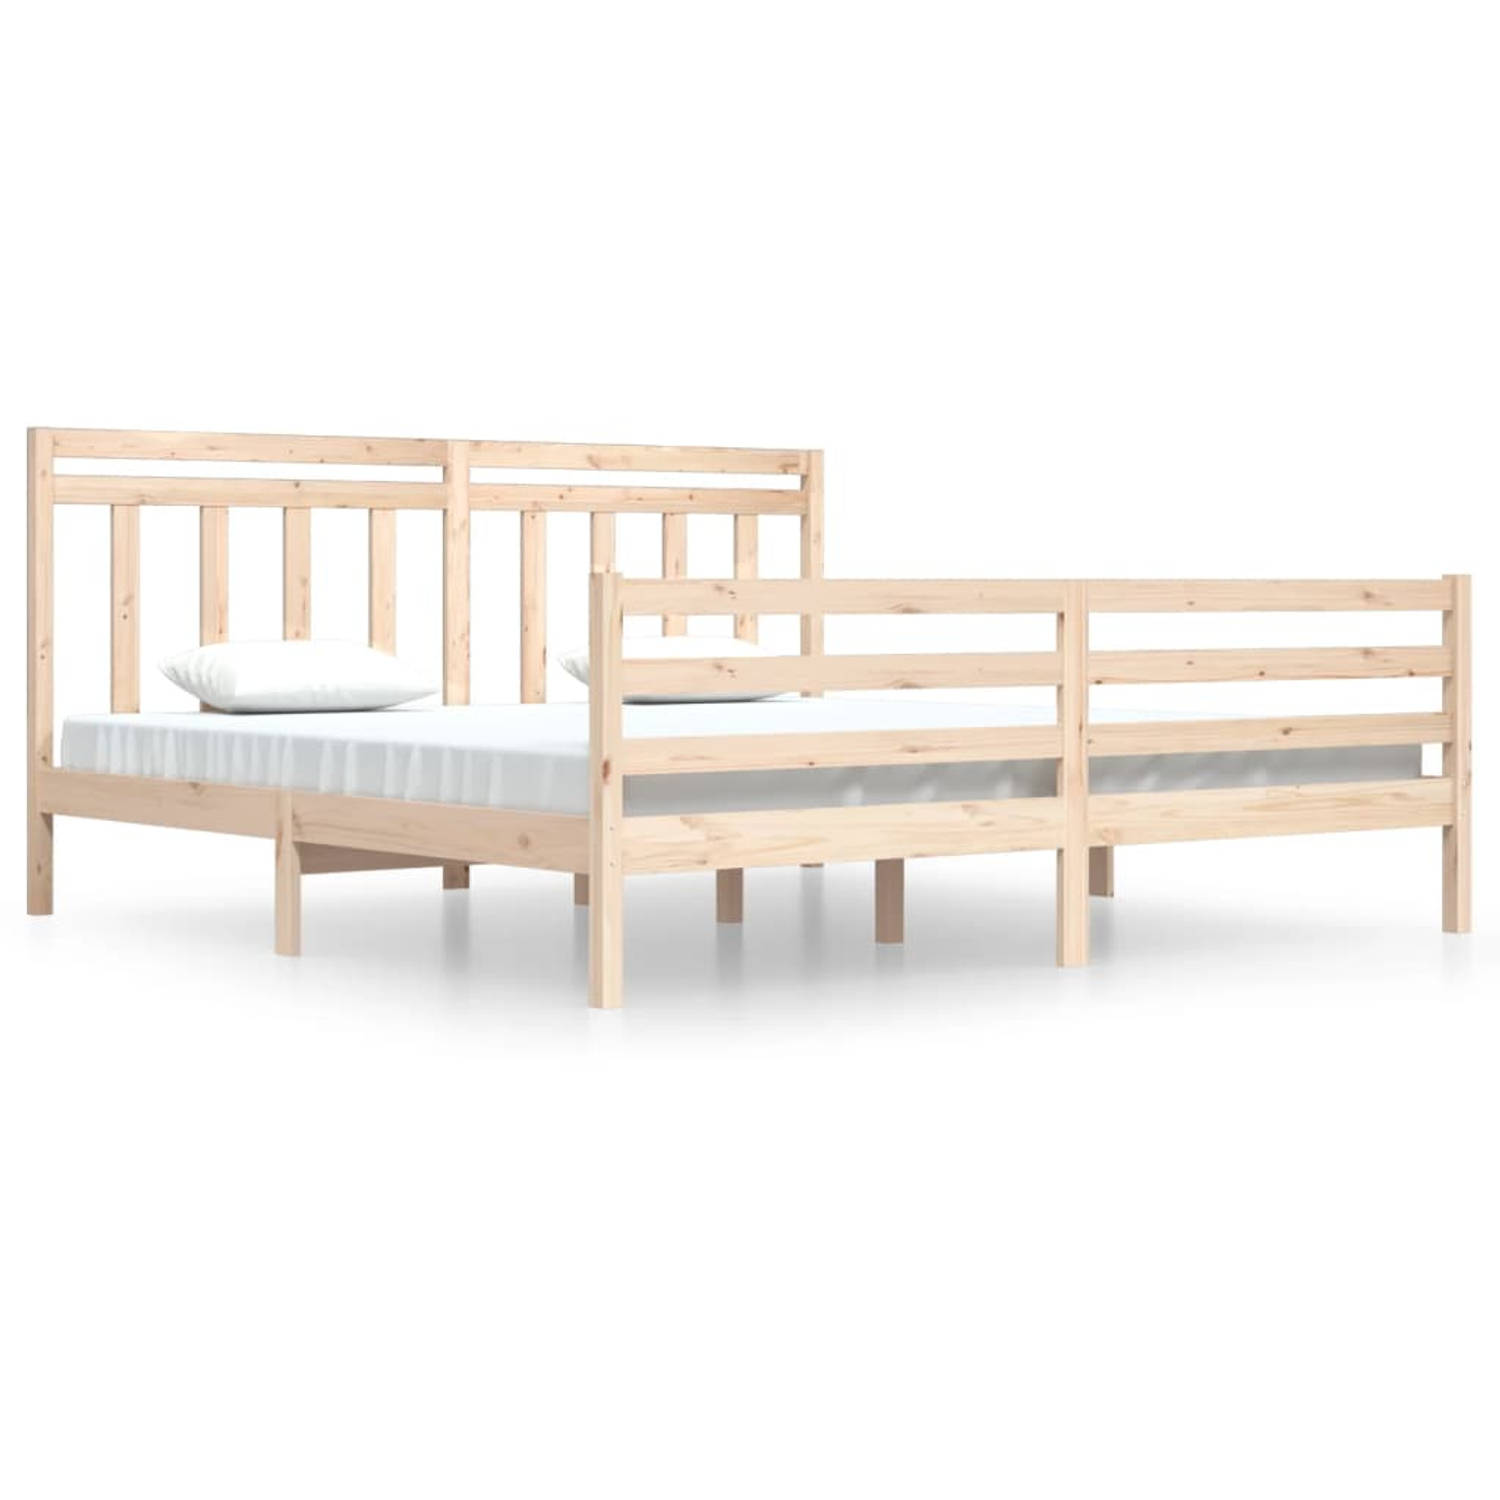 The Living Store Bedframe massief hout 200x200 cm - Bedframe - Bedframes - Tweepersoonsbed - Bed - Bedombouw - Dubbel Bed - Frame - Bed Frame - Ledikant - Houten Bedframe - Tweeper